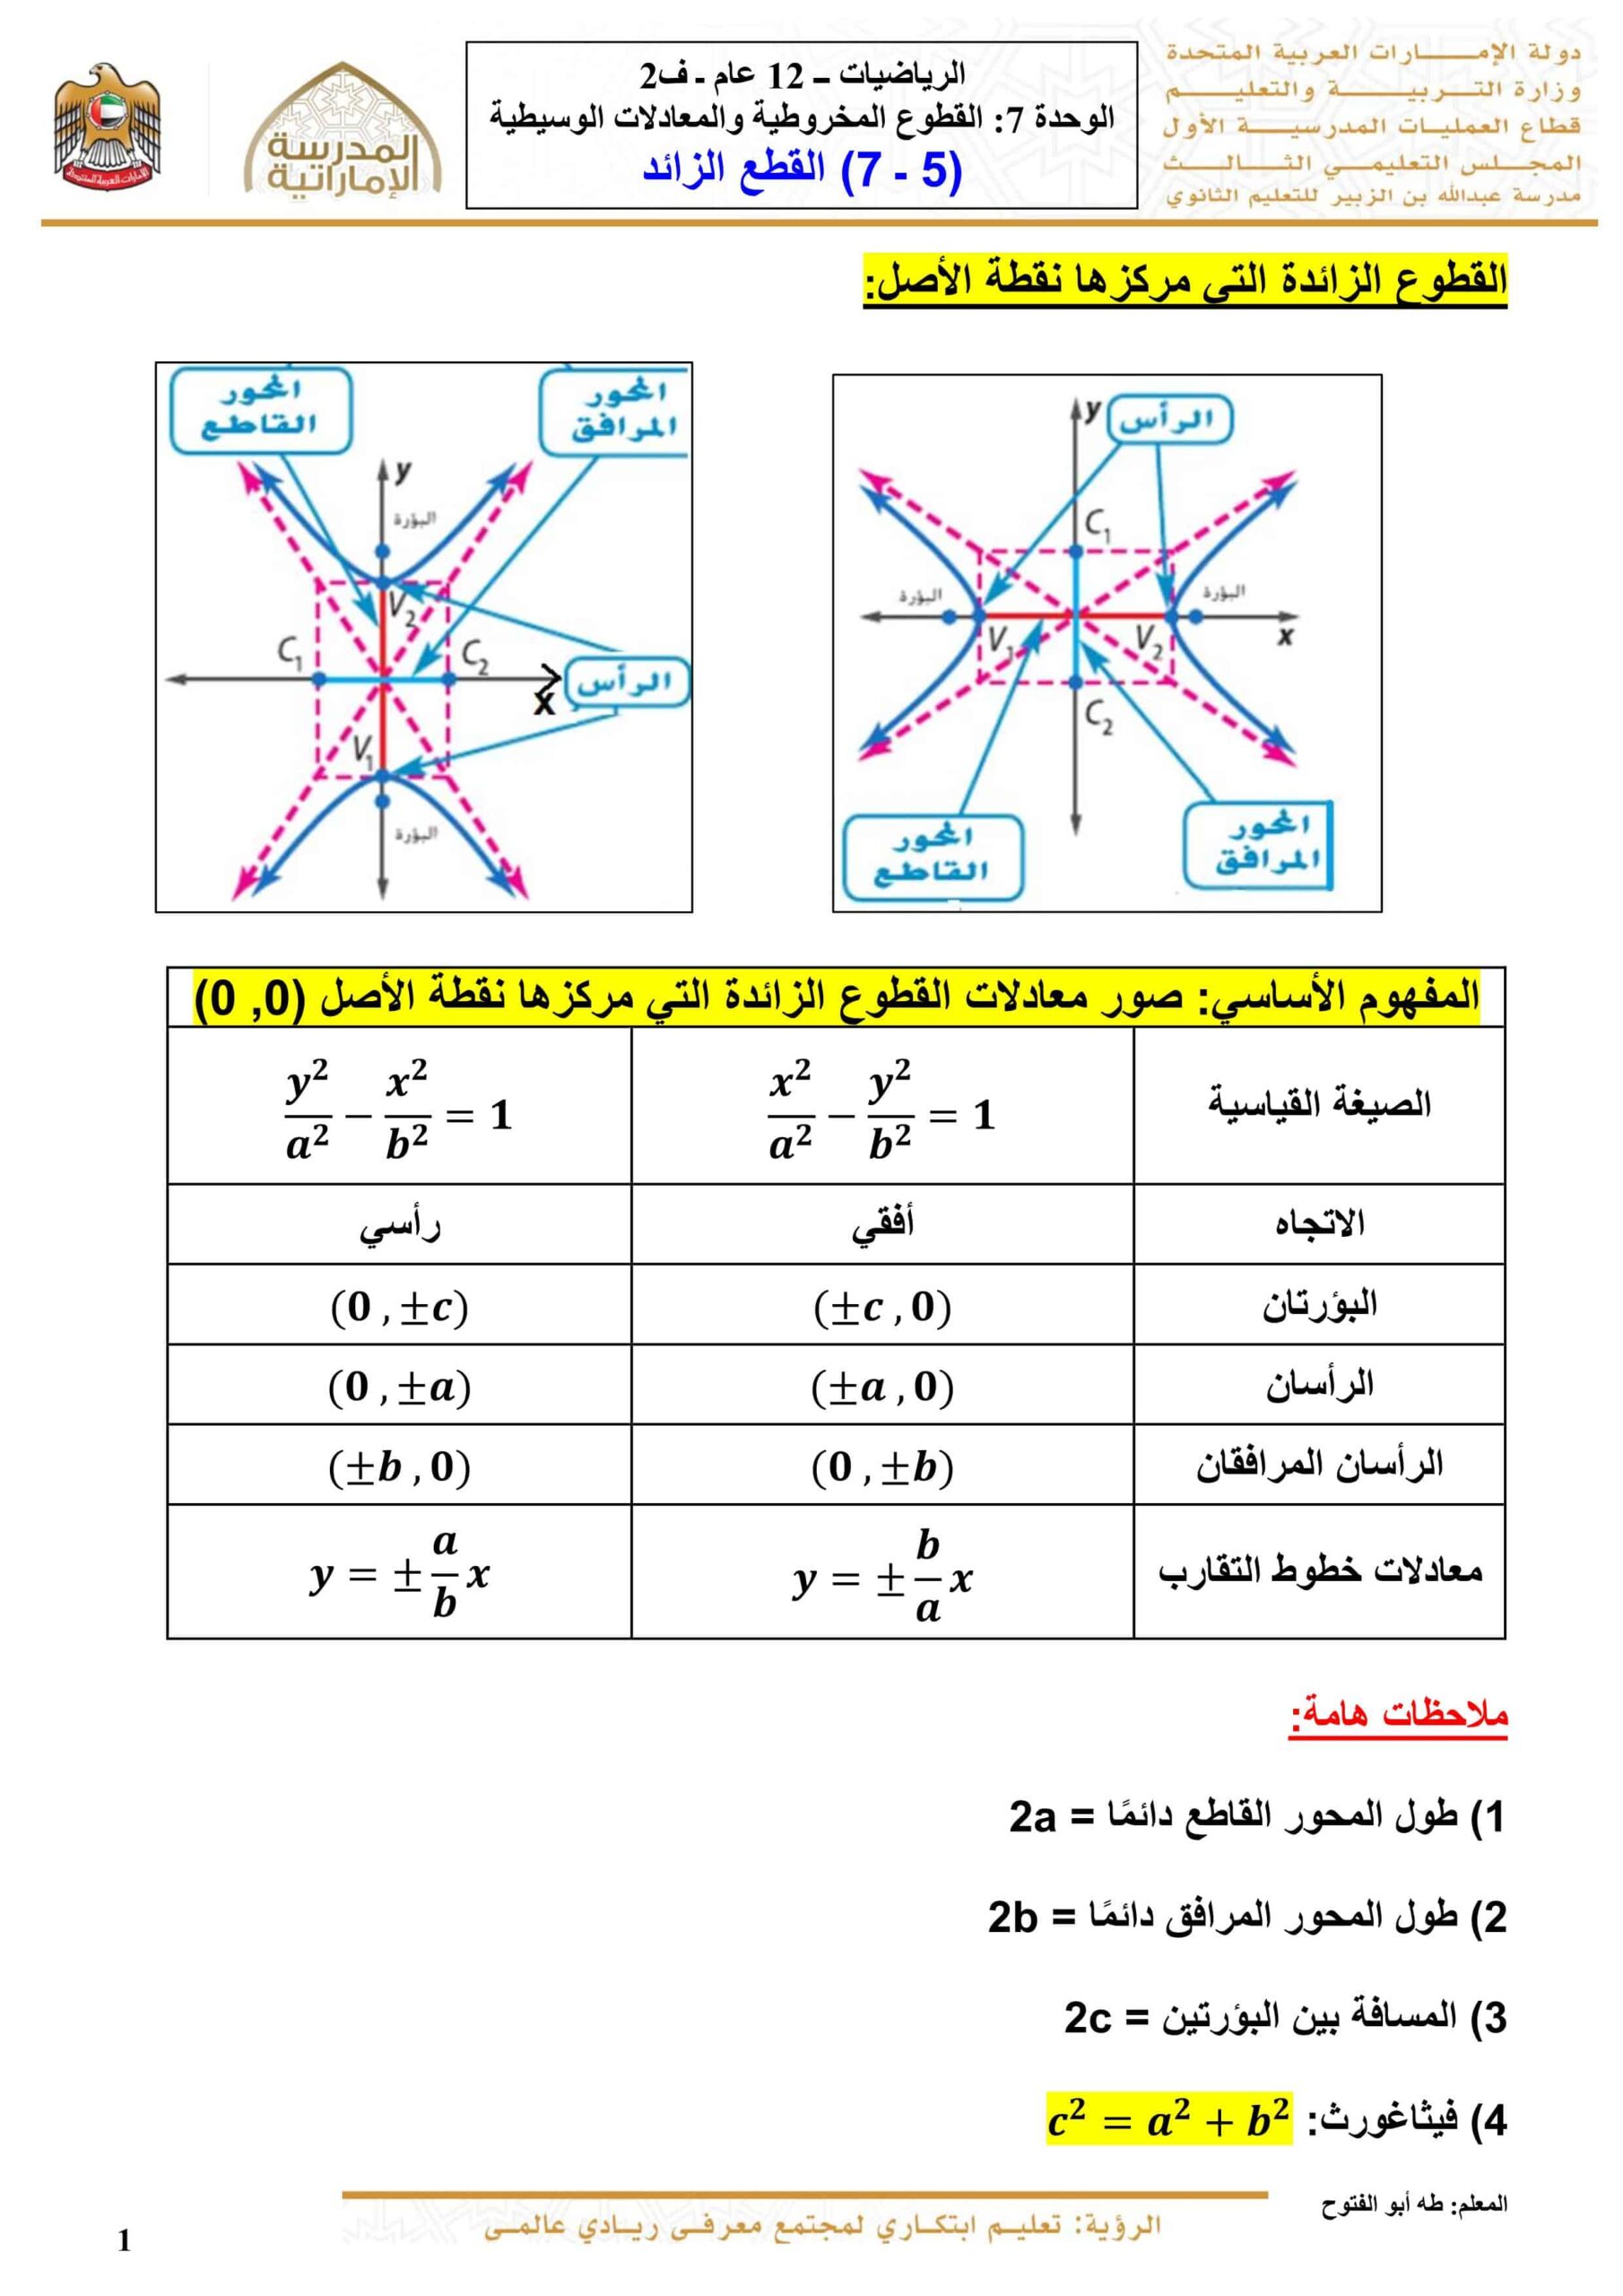 أوراق عمل القطع الزائد الرياضيات المتكاملة الصف الثاني عشر عام